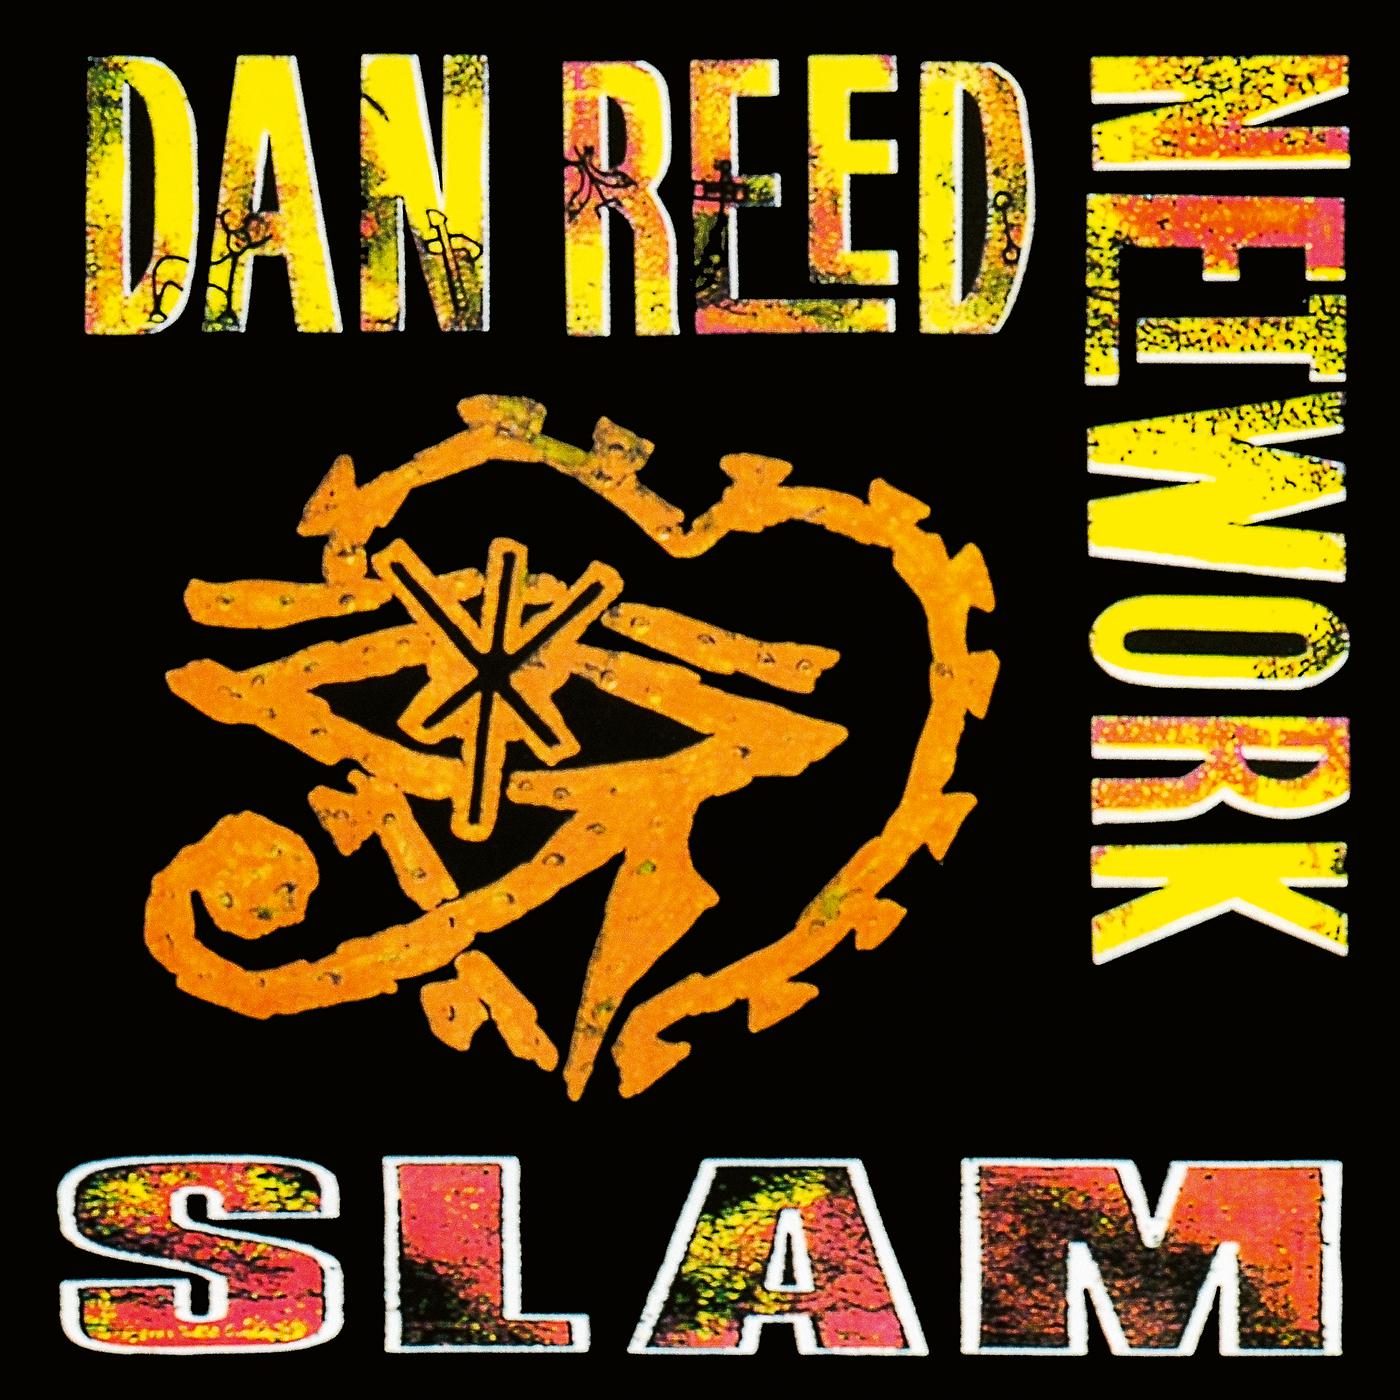 Slam back to music. Dan Reed Network Slam 1989. Dan Reed Network "Slam". Dan Reed transmission. Dan Reed Network albums.